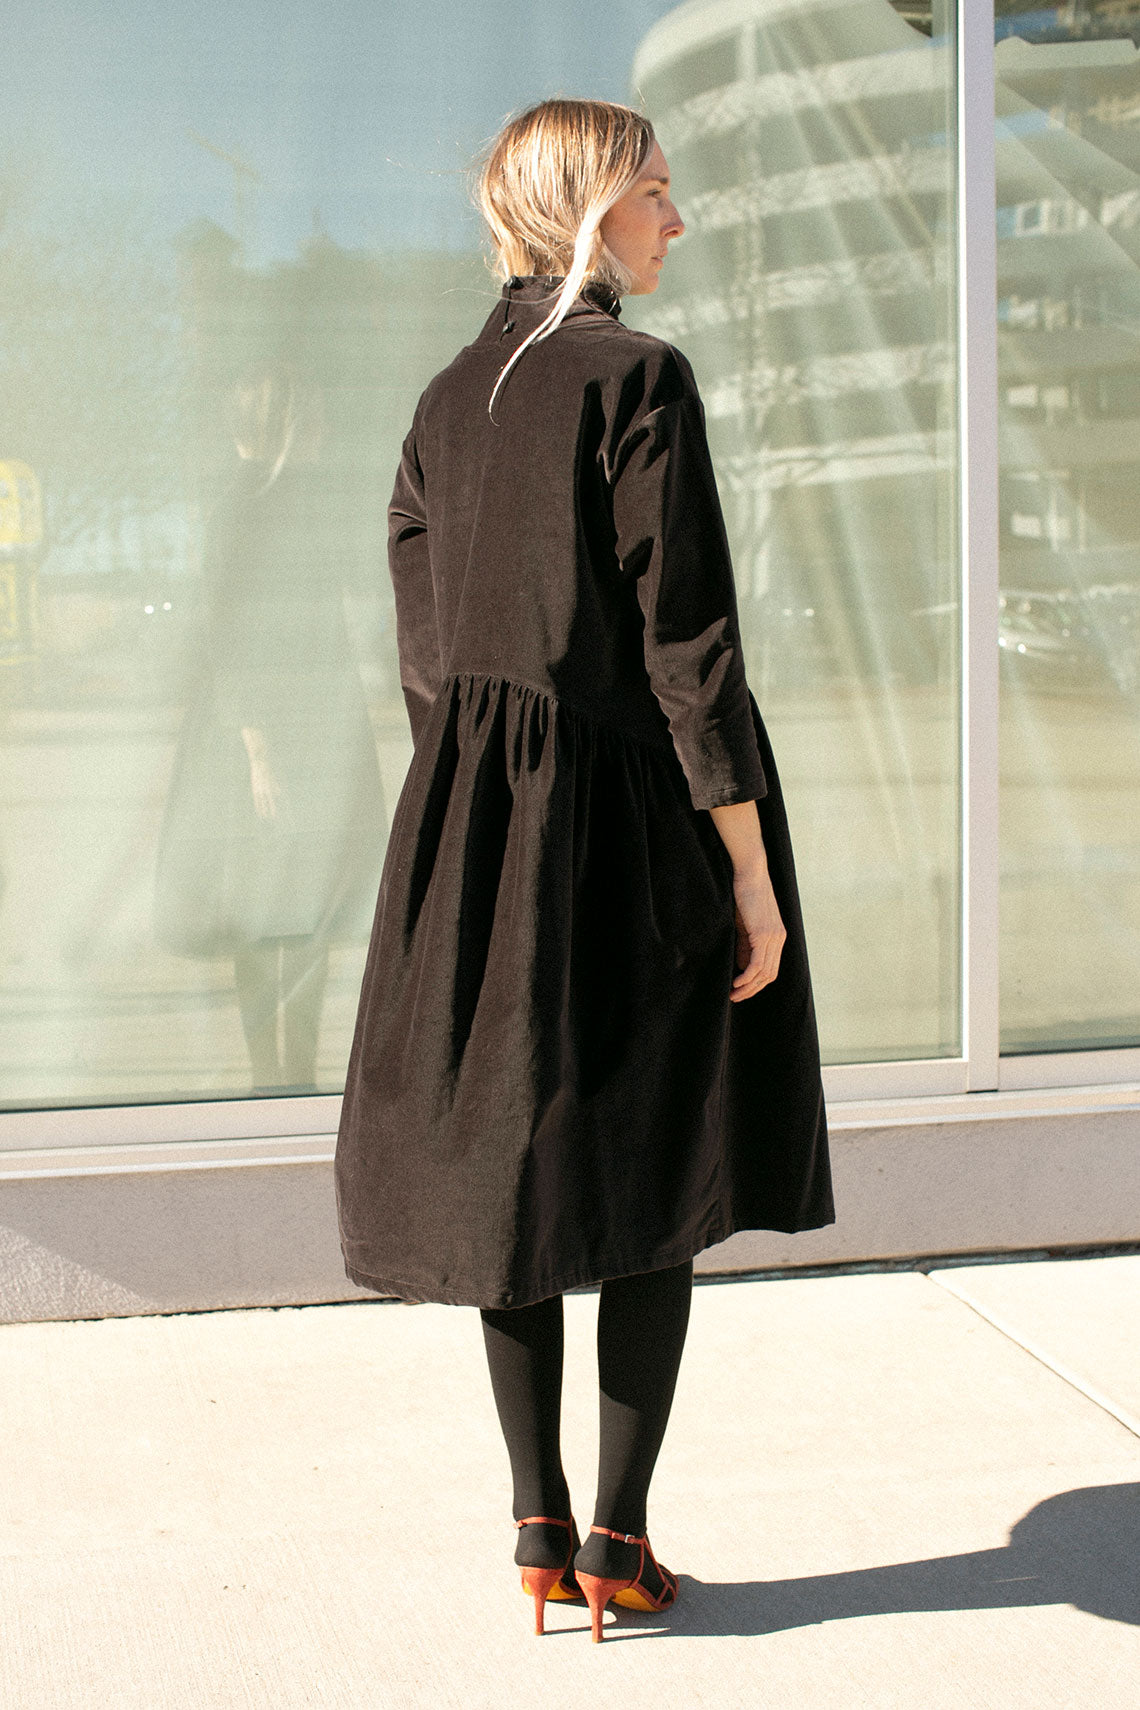 Sumi Black Velveteen Dress